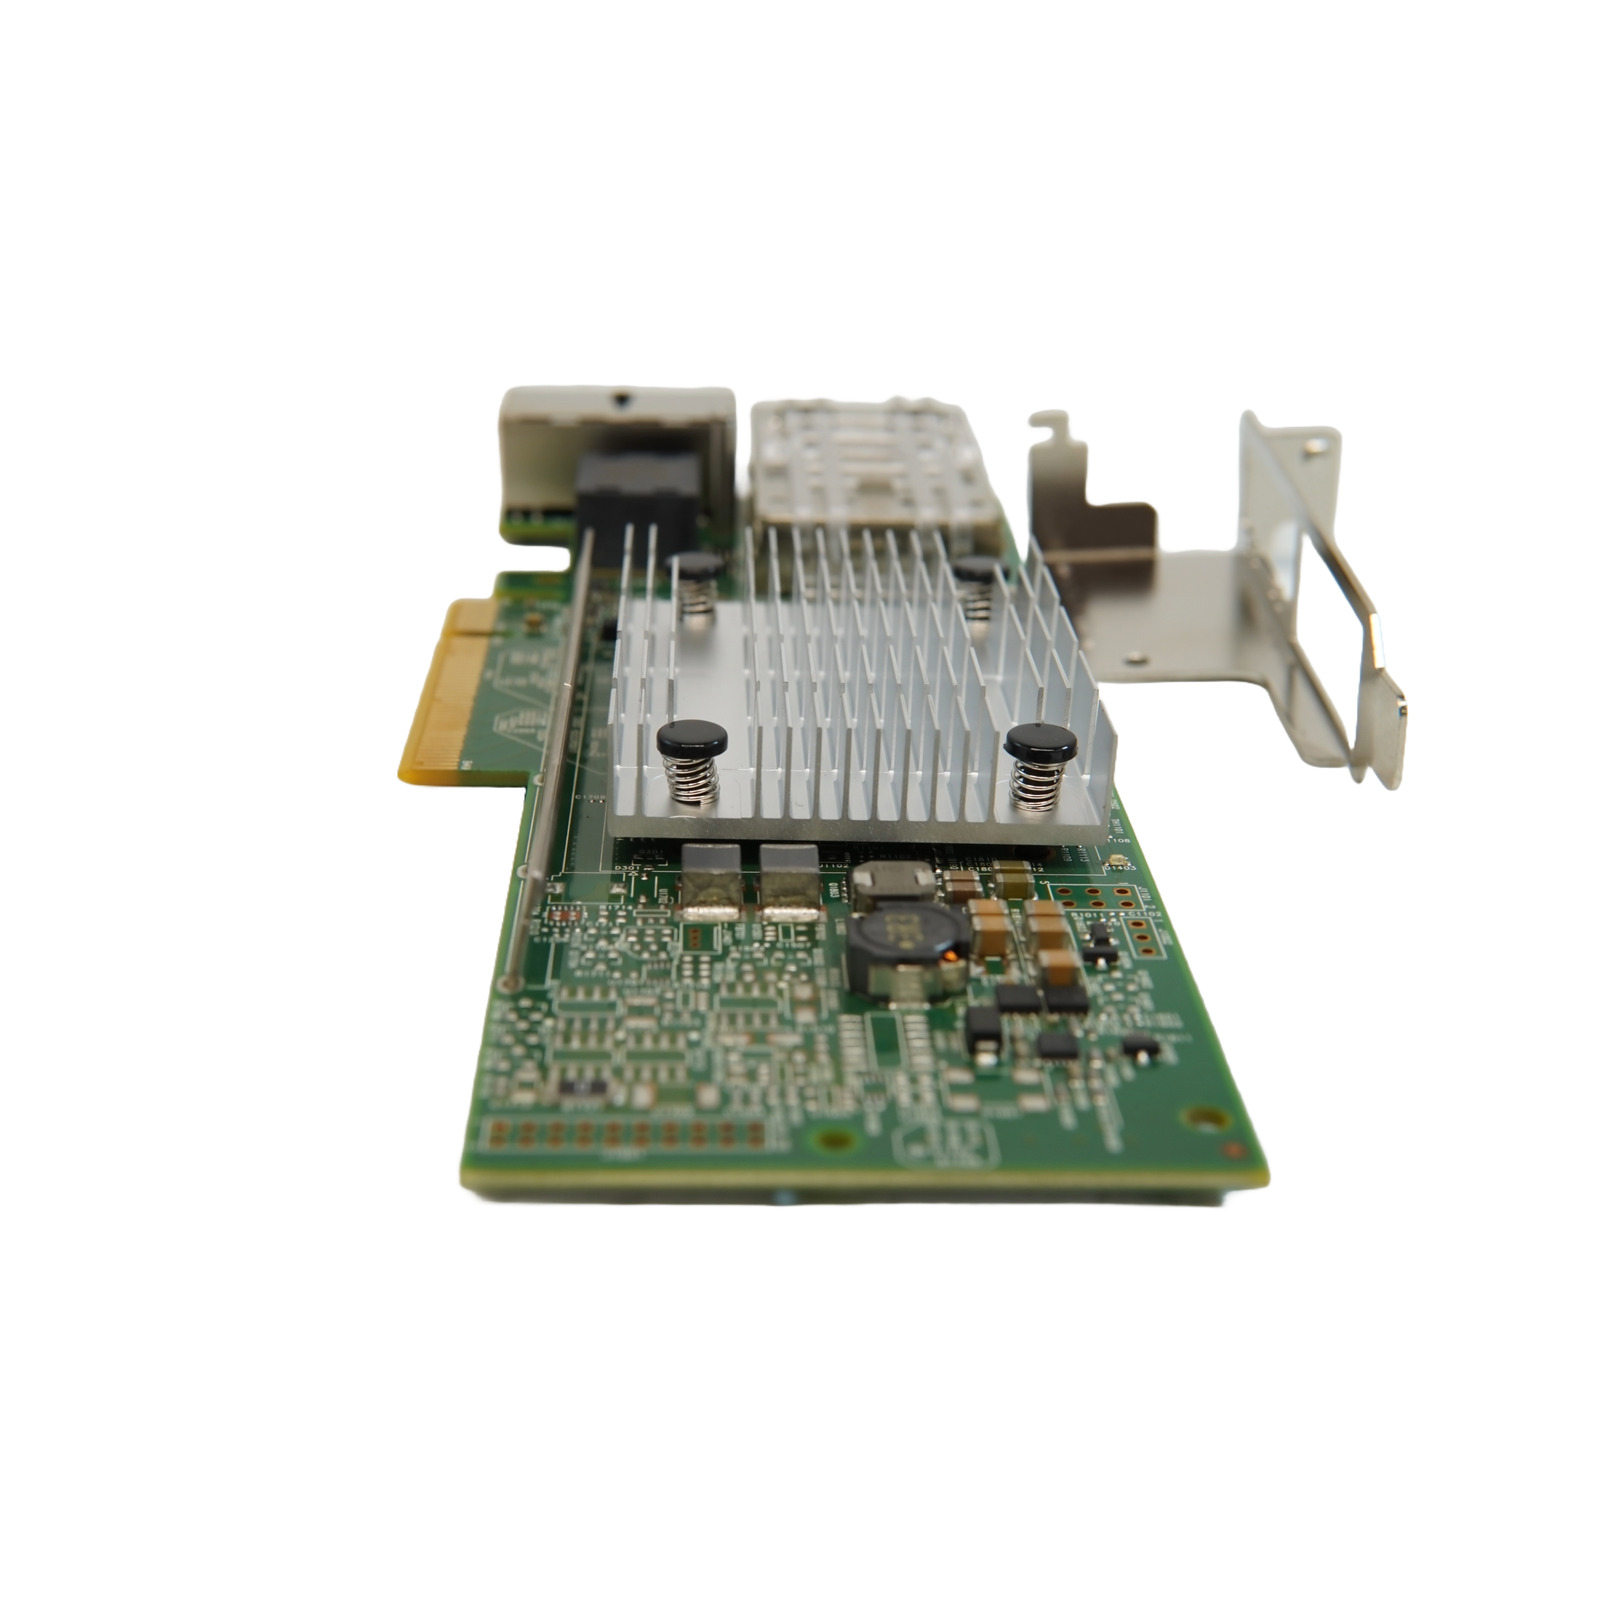 Broadcom/IBM 2x 1Gbps RJ-45, 2x 10Gbps SFP+ PCIe 2.0 Adapter Card 00E2865